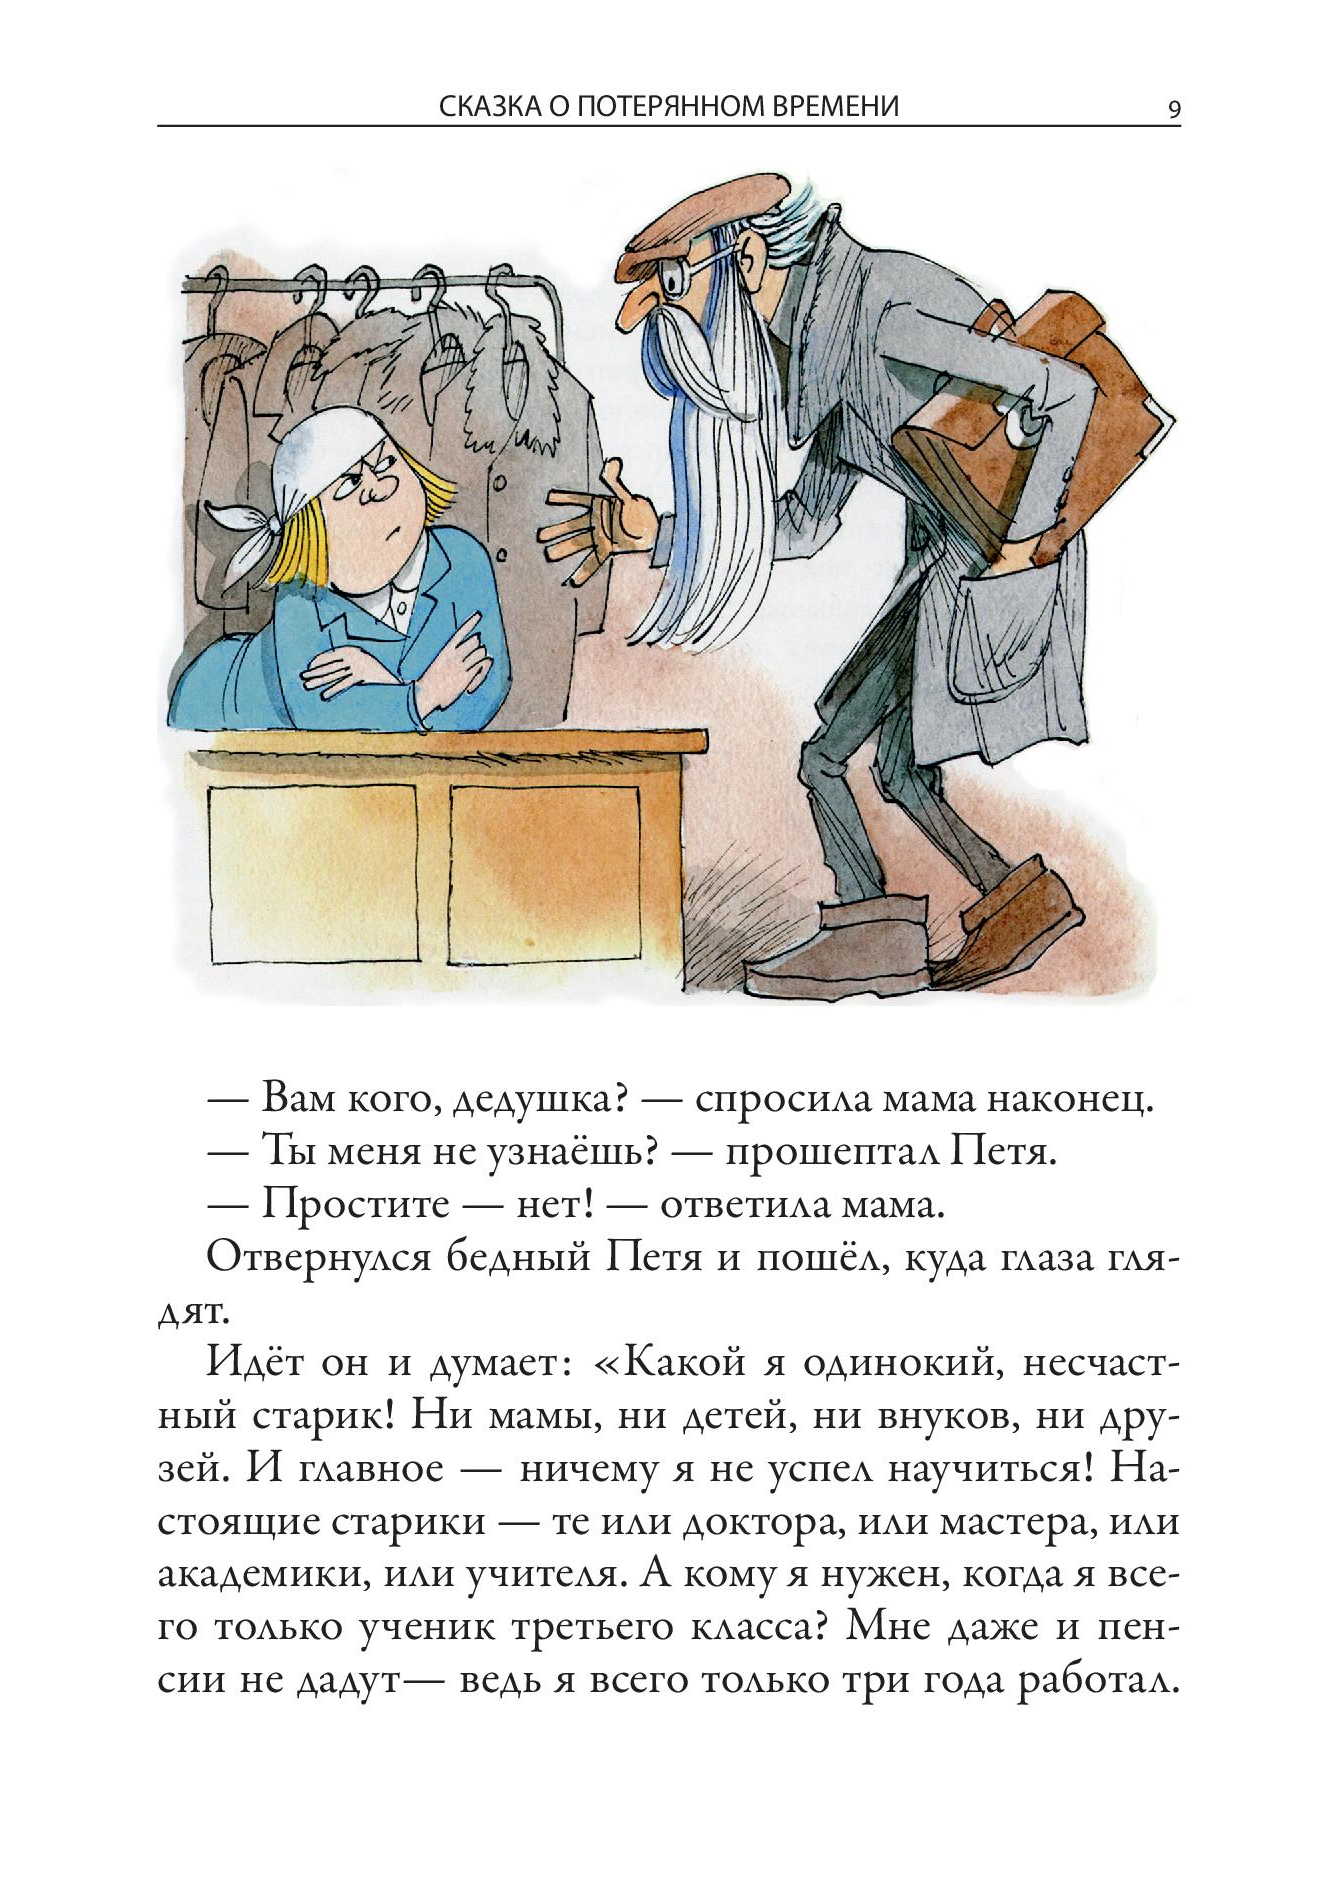 Сказка о потерянном времени - Евгений Шварц, читать онлайн | Сказки, Стикер-арт, Иллюстрации